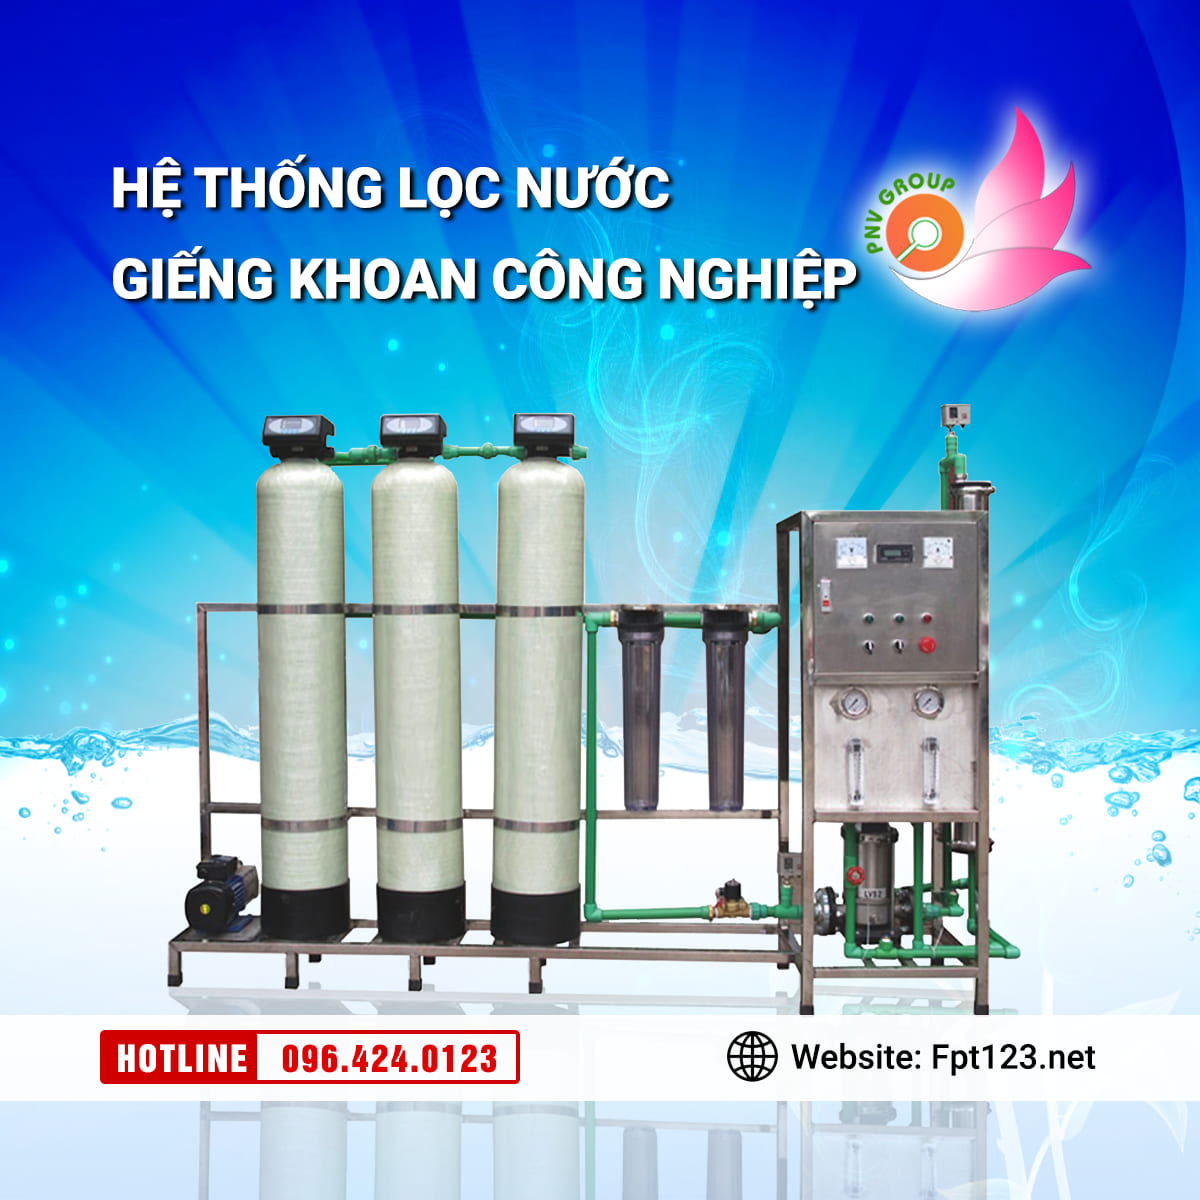 Lắp đặt hệ thống xử lý nước giếng khoan tại Hưng Yên